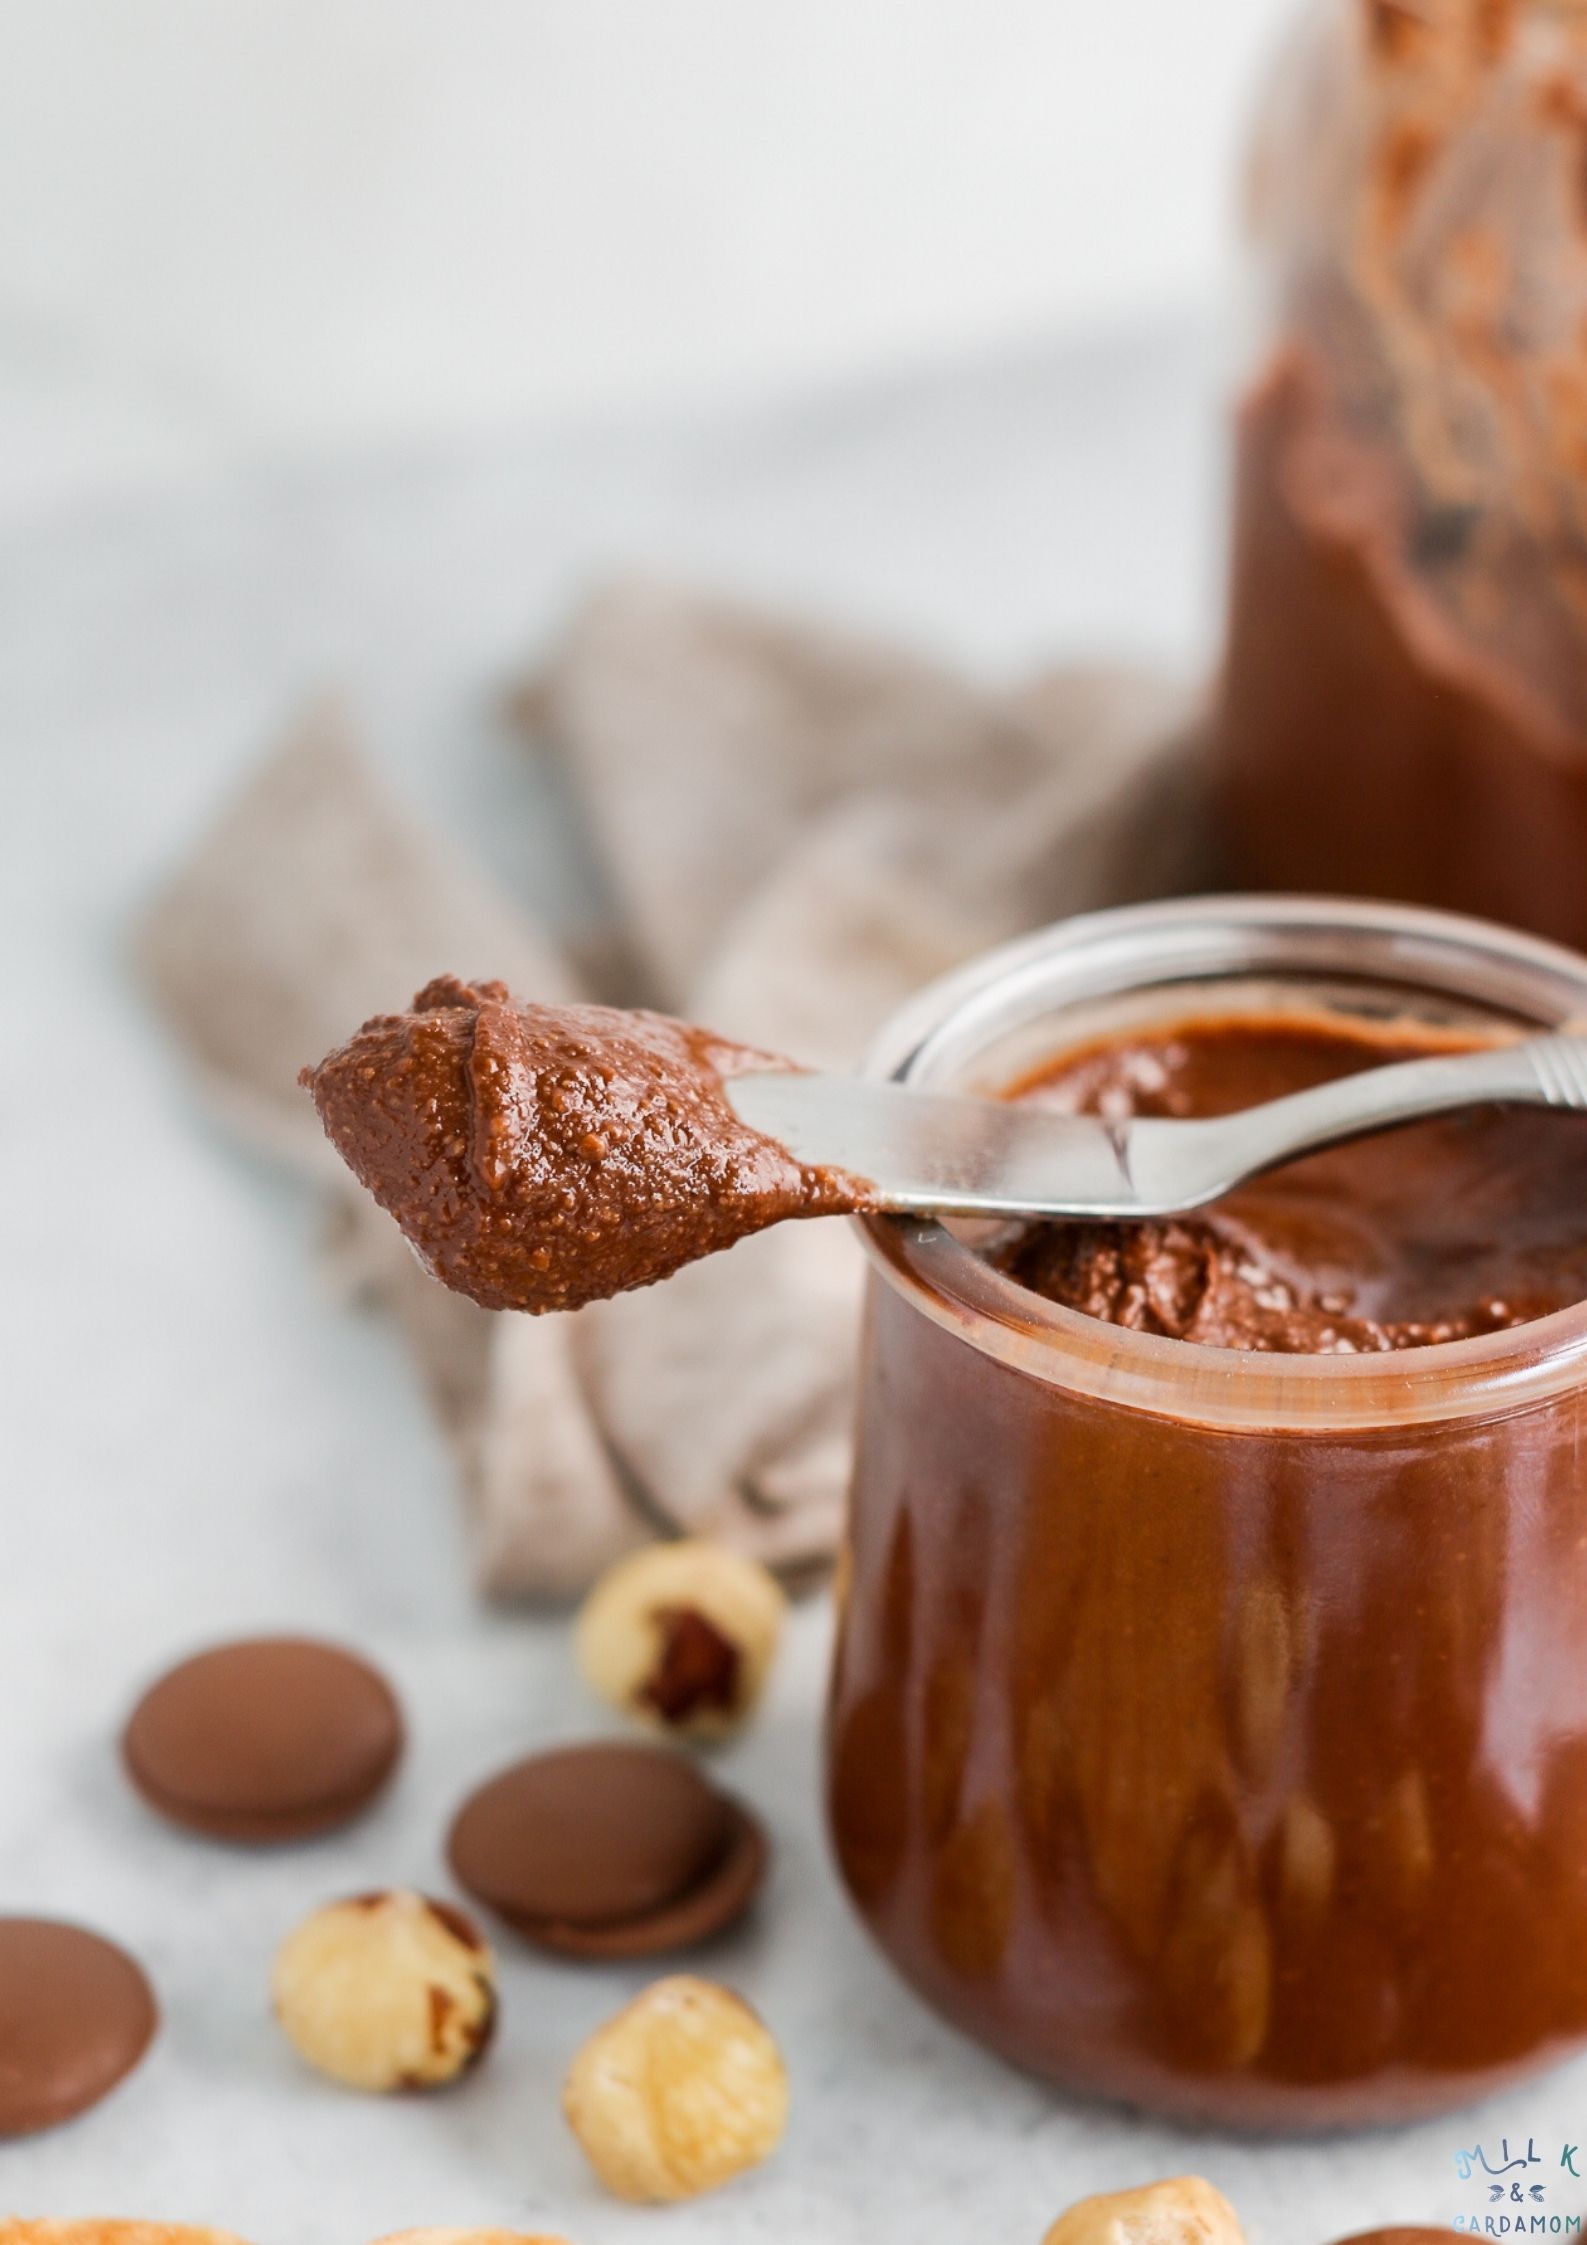 Homemade Nutella (Hazelnut Spread) | Milk & Cardamom